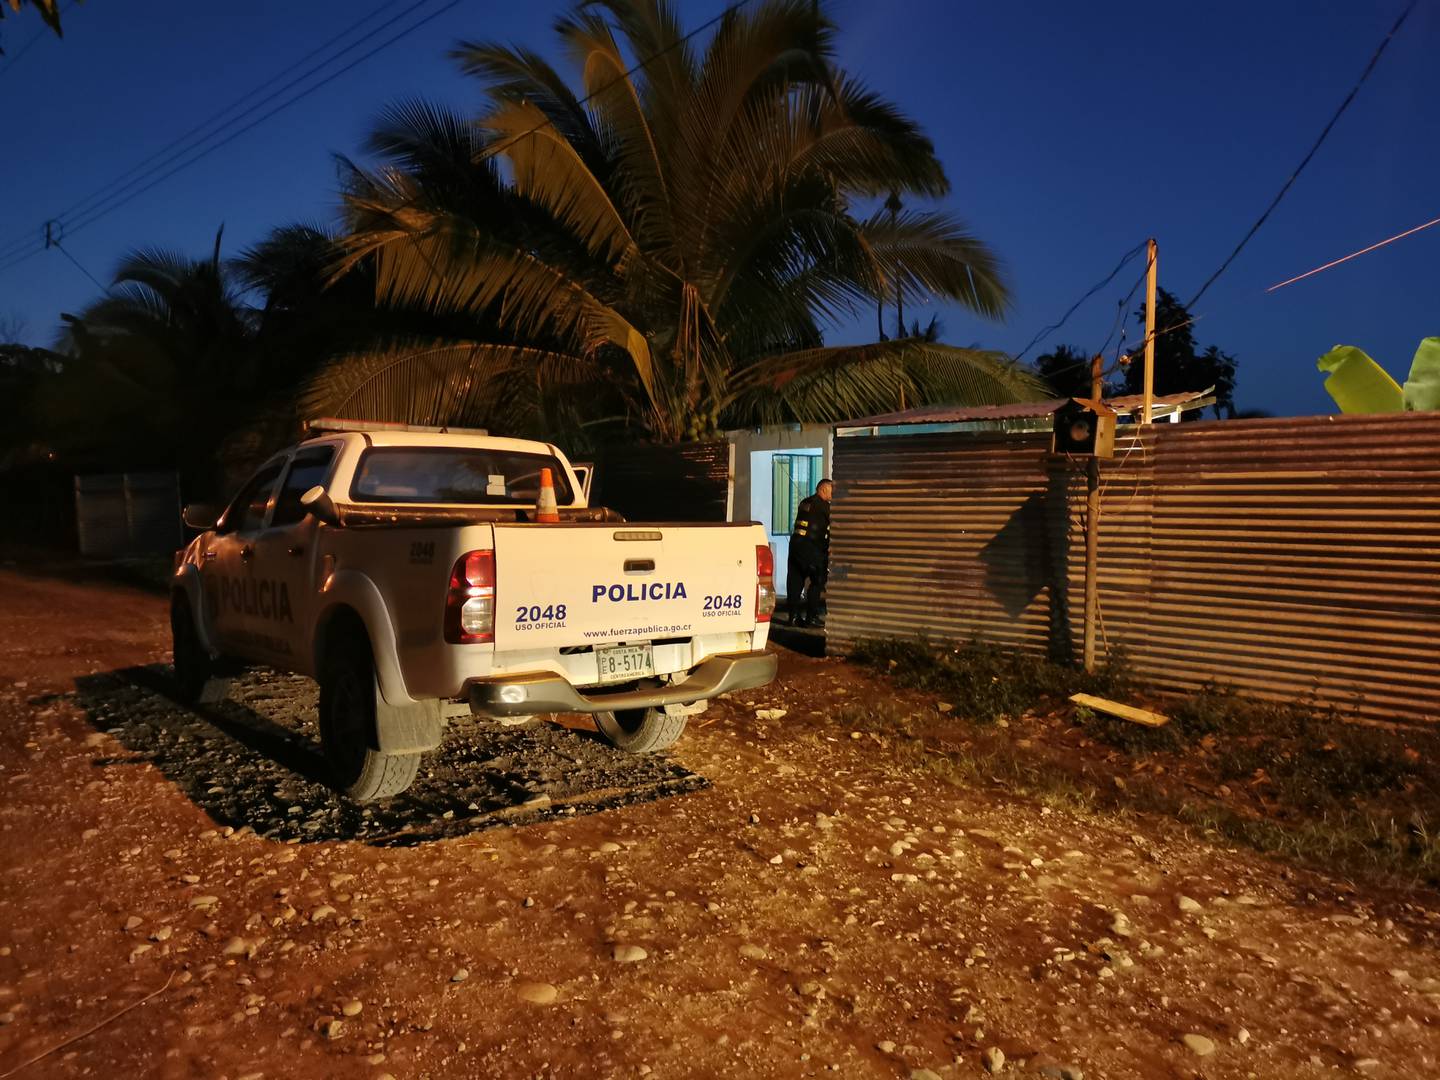 Al amanecer de este domingo las pesquisas policiales seguían en Duacarí, para buscar al responsable de matar al peluquero. Foto: Reiner Montero.